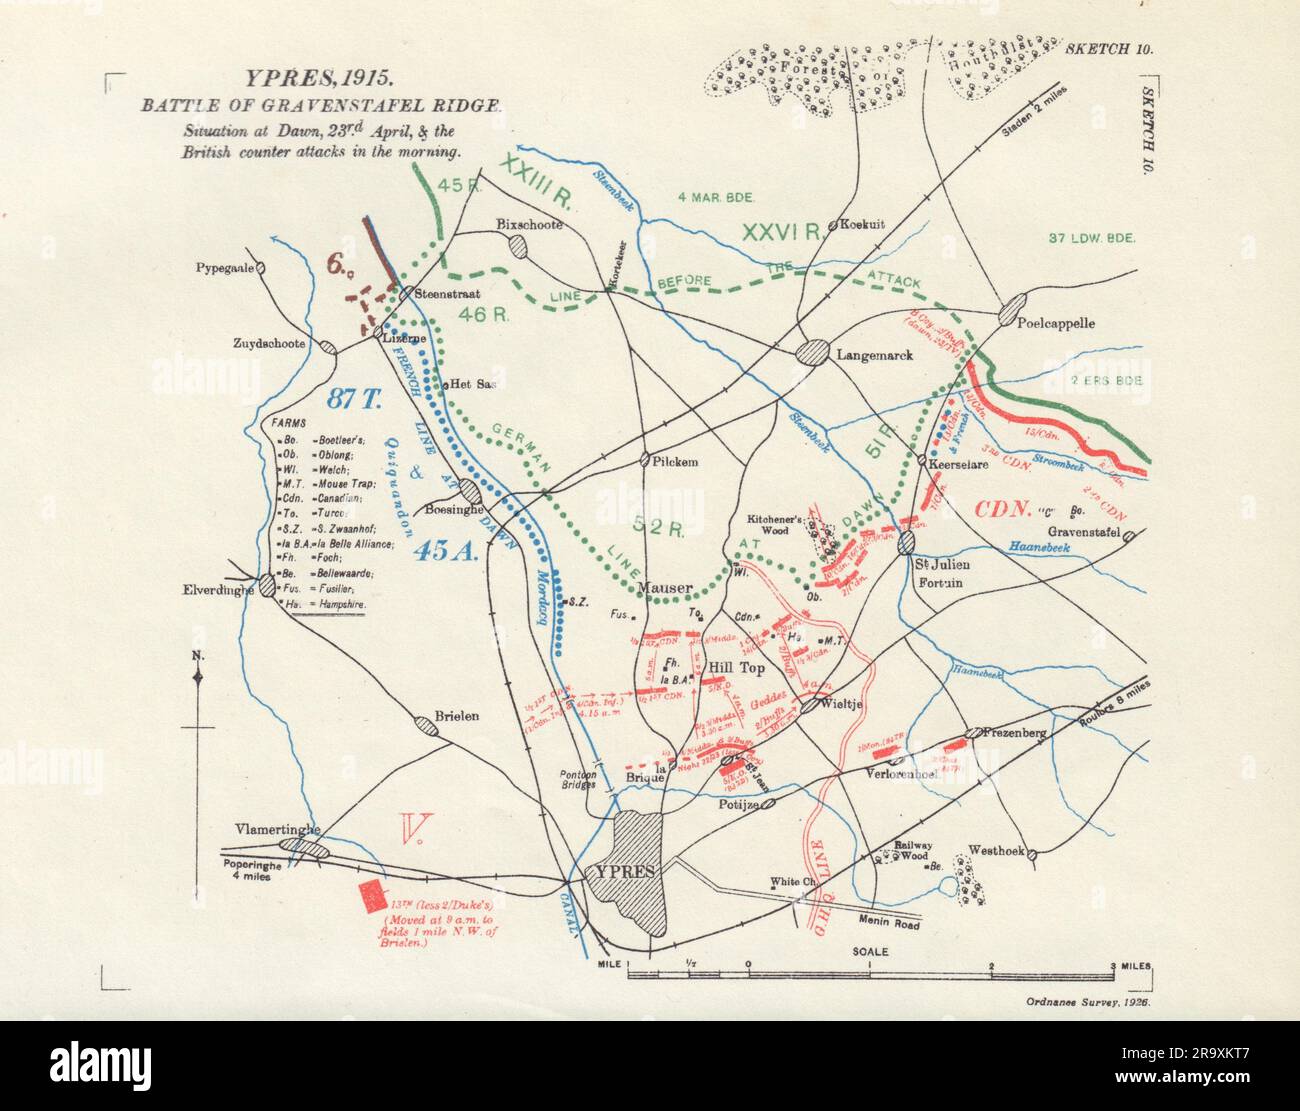 Bataille de Gravenstafel Ridge. Matin 23rd avril 1915. Ypres. WW1. 1927 carte Banque D'Images